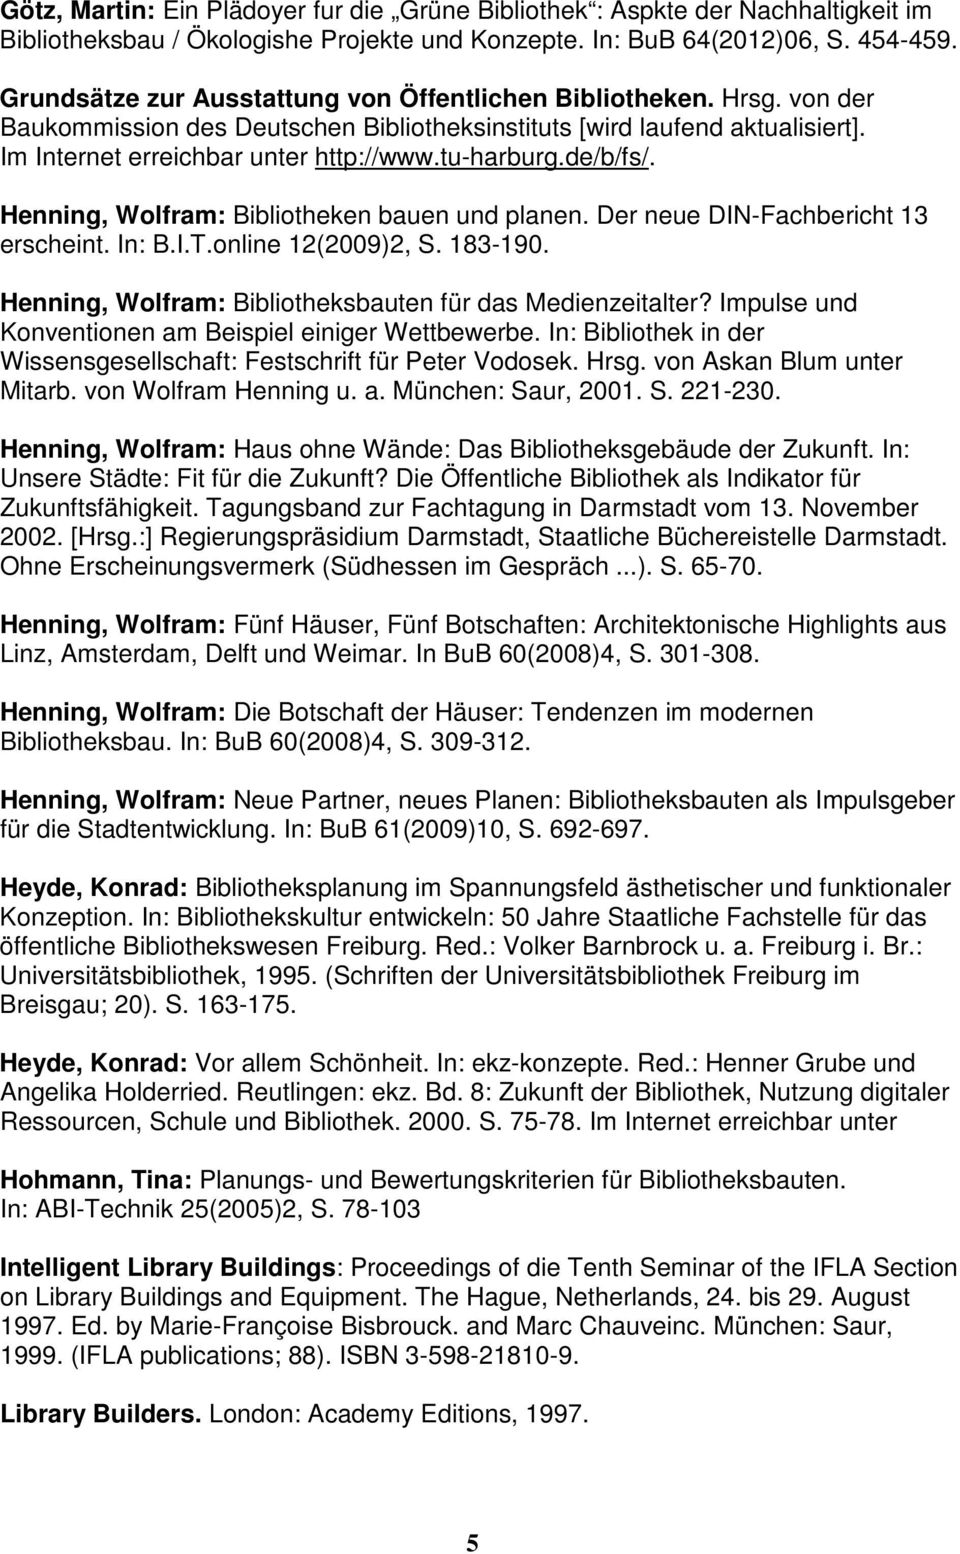 tu-harburg.de/b/fs/. Henning, Wolfram: Bibliotheken bauen und planen. Der neue DIN-Fachbericht 13 erscheint. In: B.I.T.online 12(2009)2, S. 183-190.